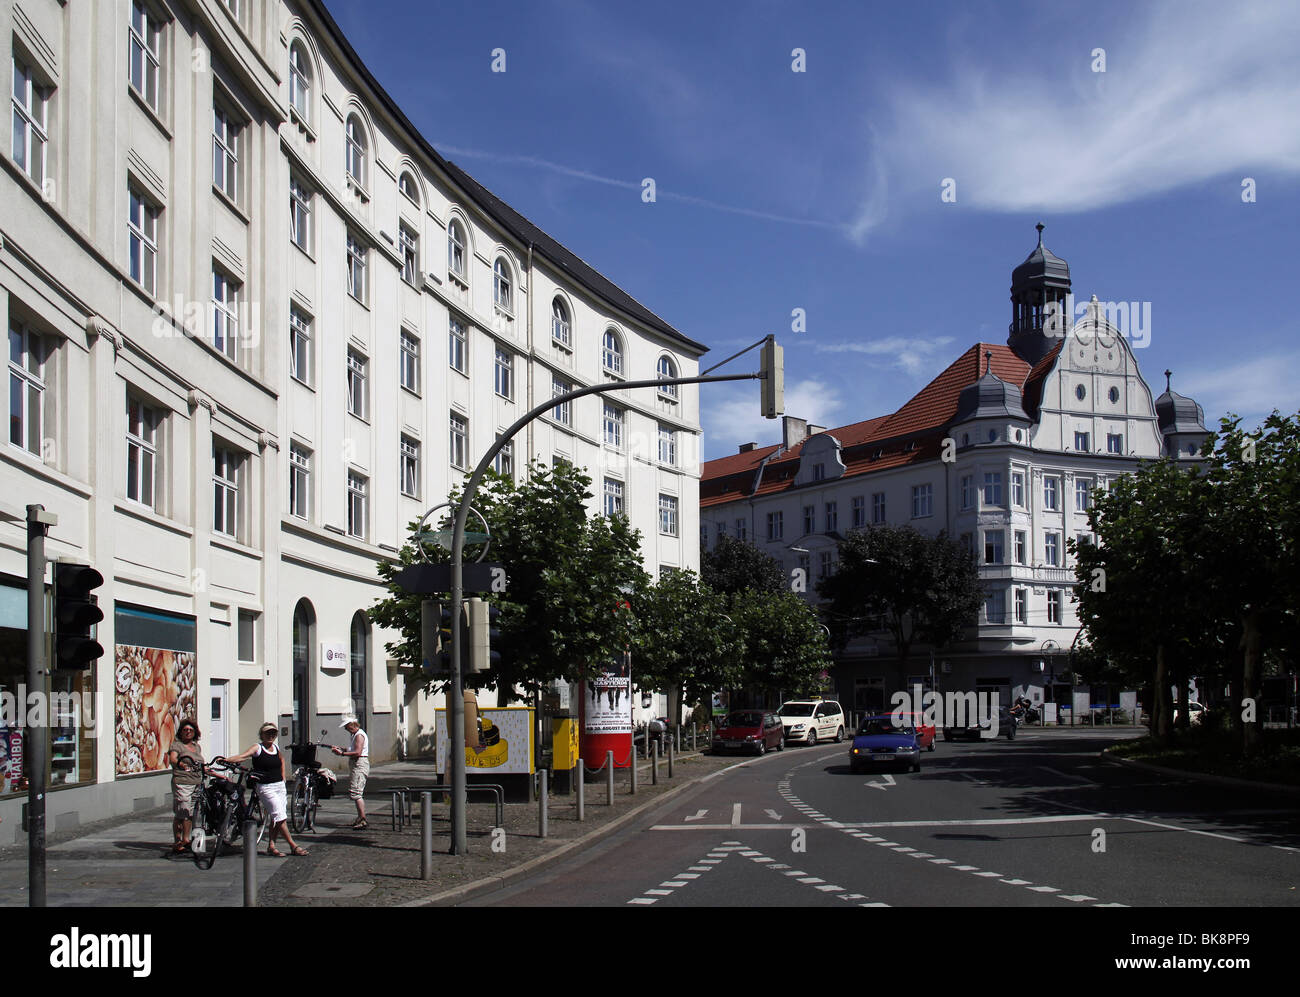 Borsigplatz square avec de prestigieux immeuble de bureaux, Nordstadt, Dortmund, Rhénanie du Nord-Westphalie, Allemagne, Europe Banque D'Images